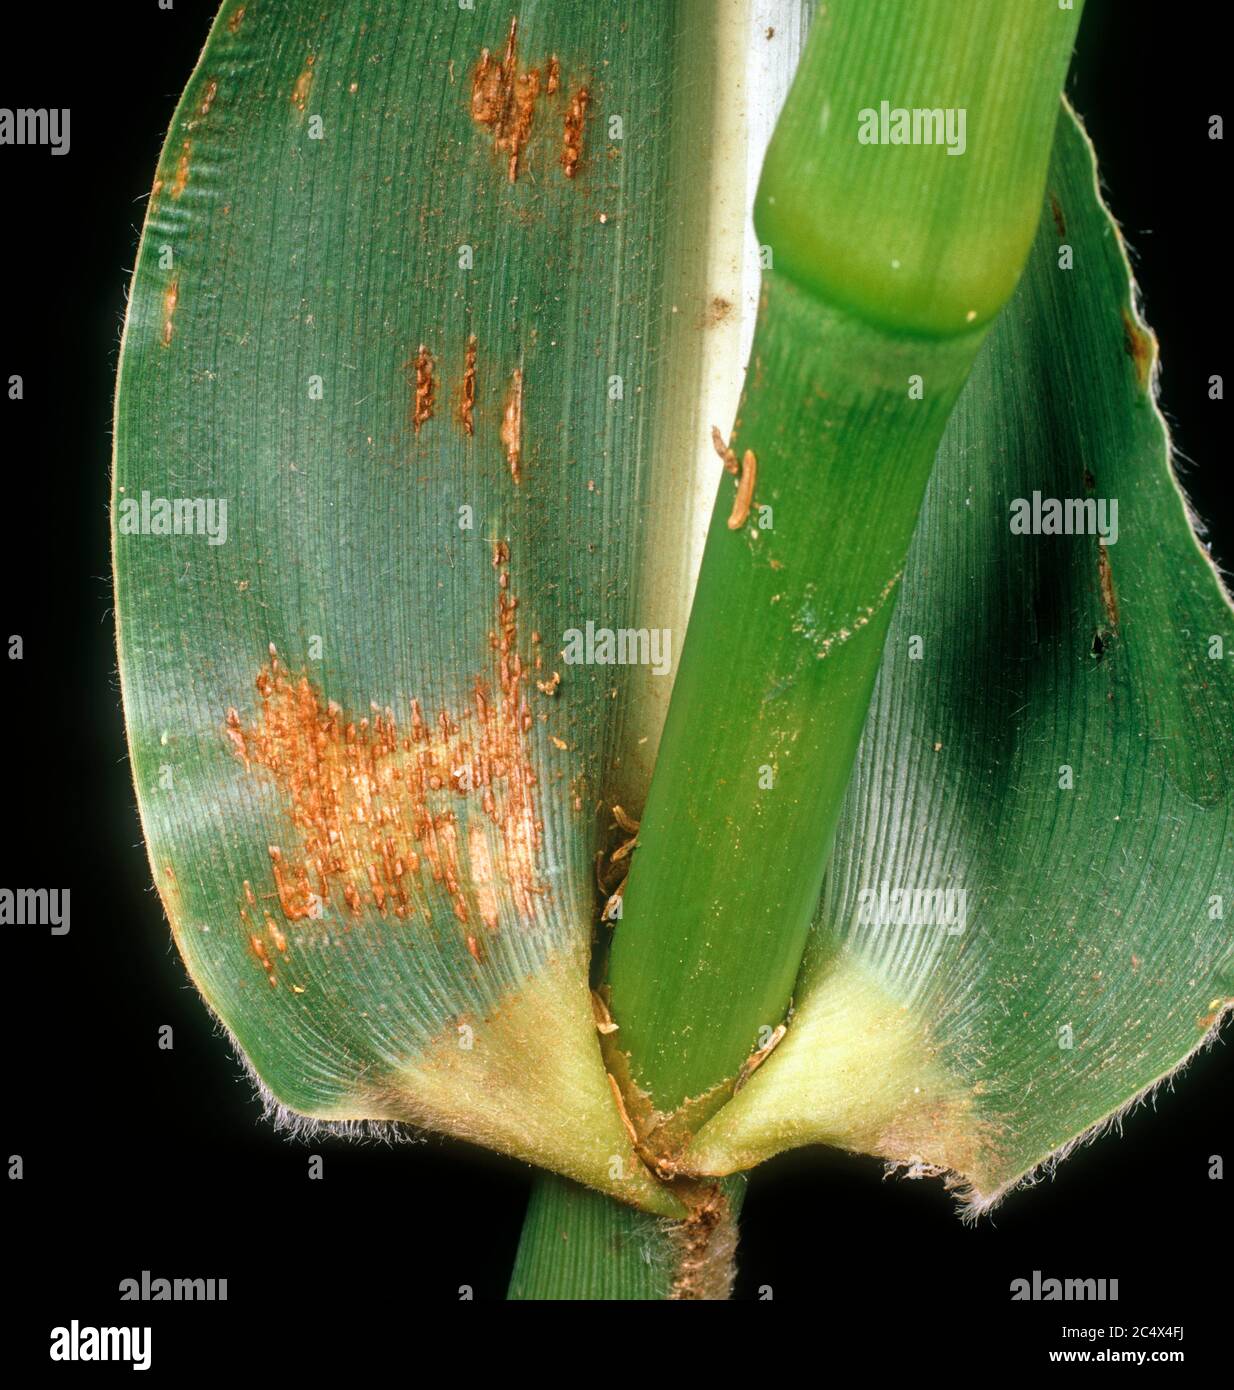 Corn, maize or sorghum rust (Puccinia sorghi) fungus disease pustules on maize or corn leaf, Illinois, USA Stock Photo